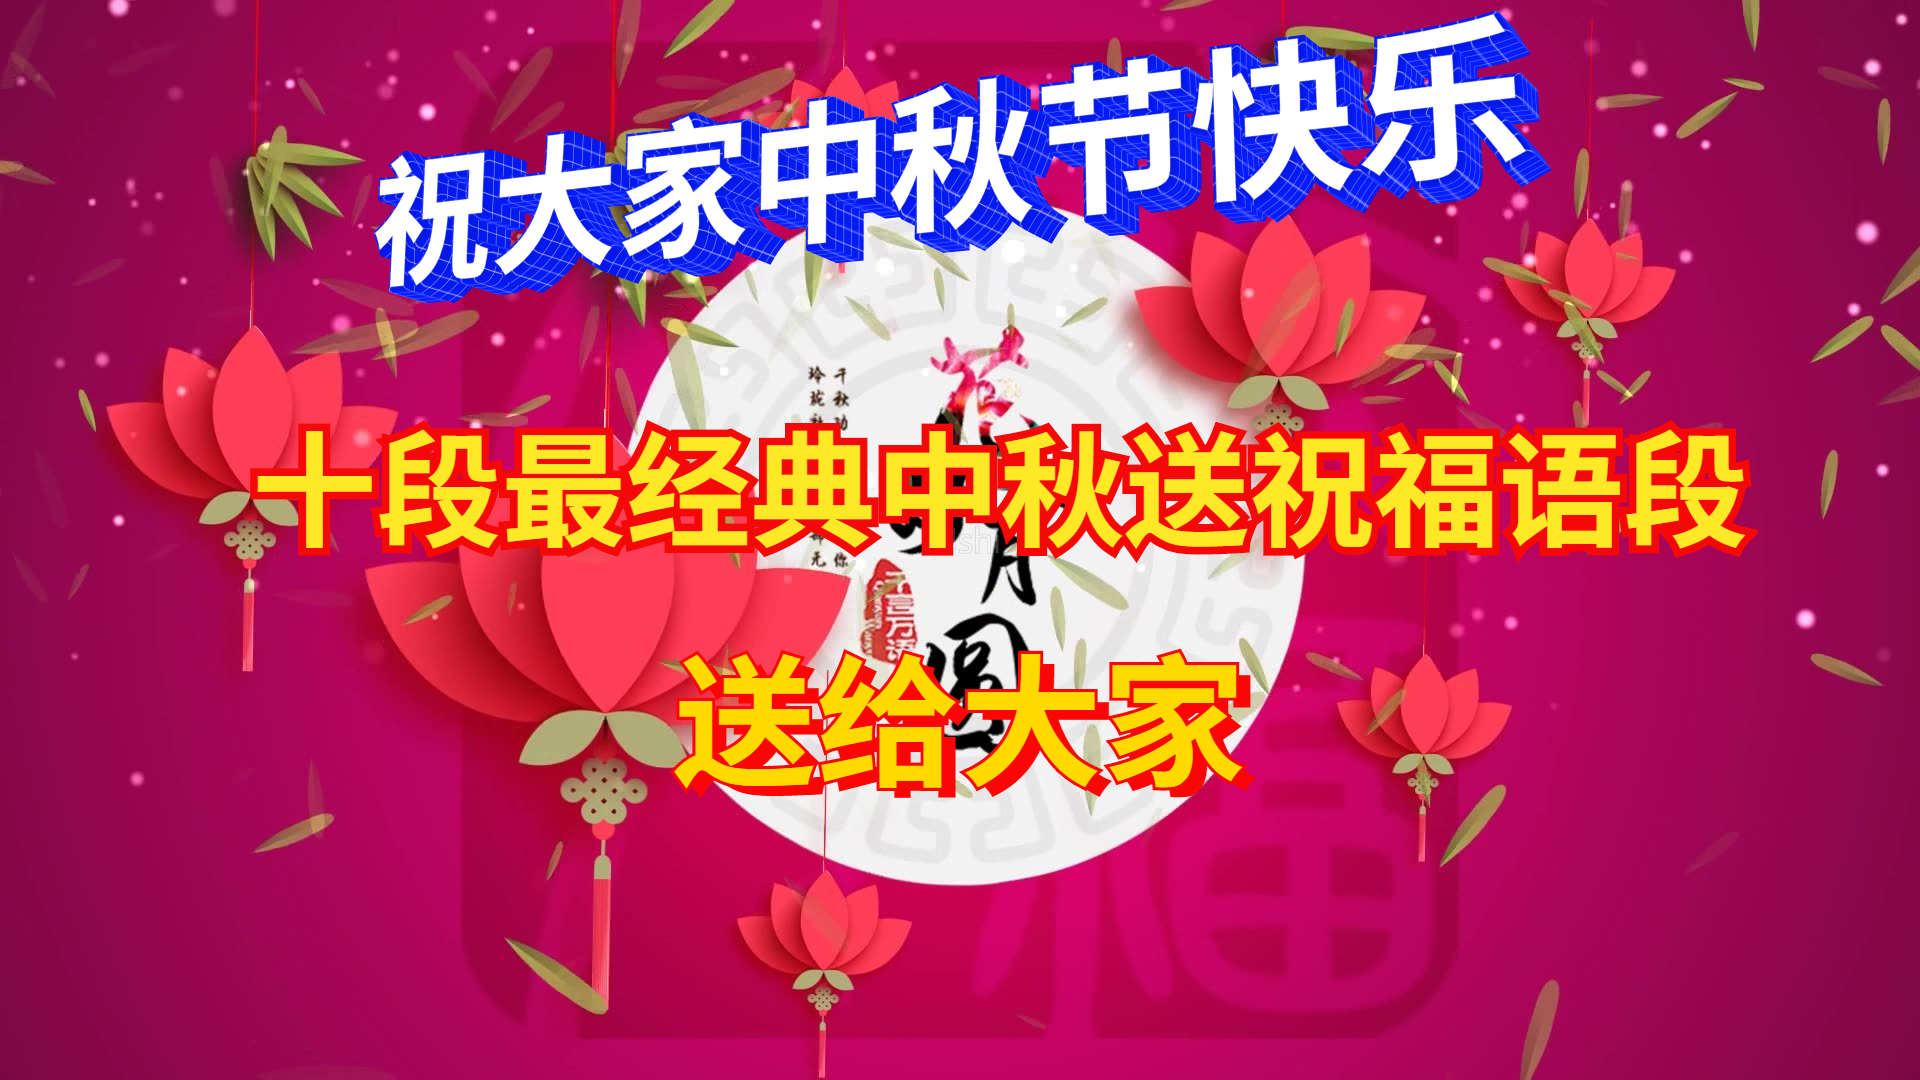 节祝福语句子大全今天是2021年的中秋节,这一天小编祝大家中秋节快乐